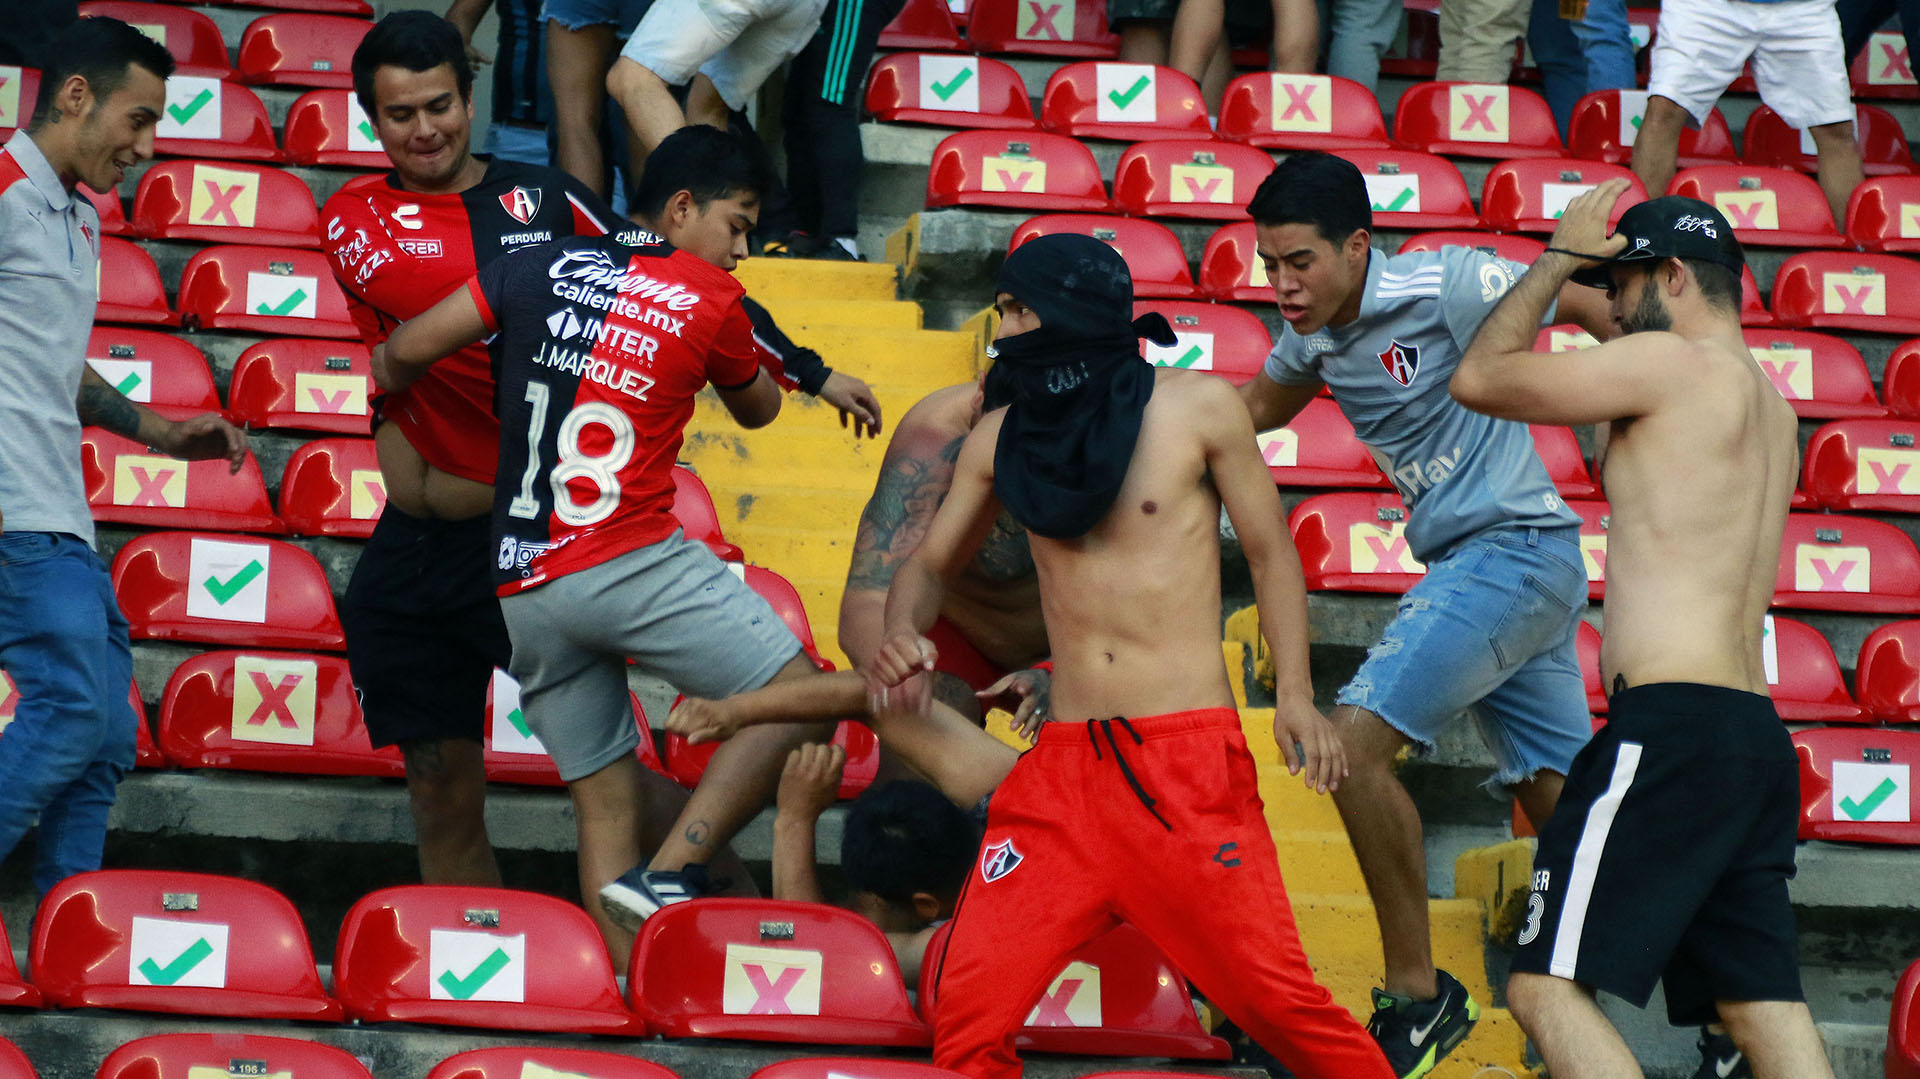 Dos presuntos criminales habrían estado al interior del estadio al momento de la trifulca (Foto: AFP)